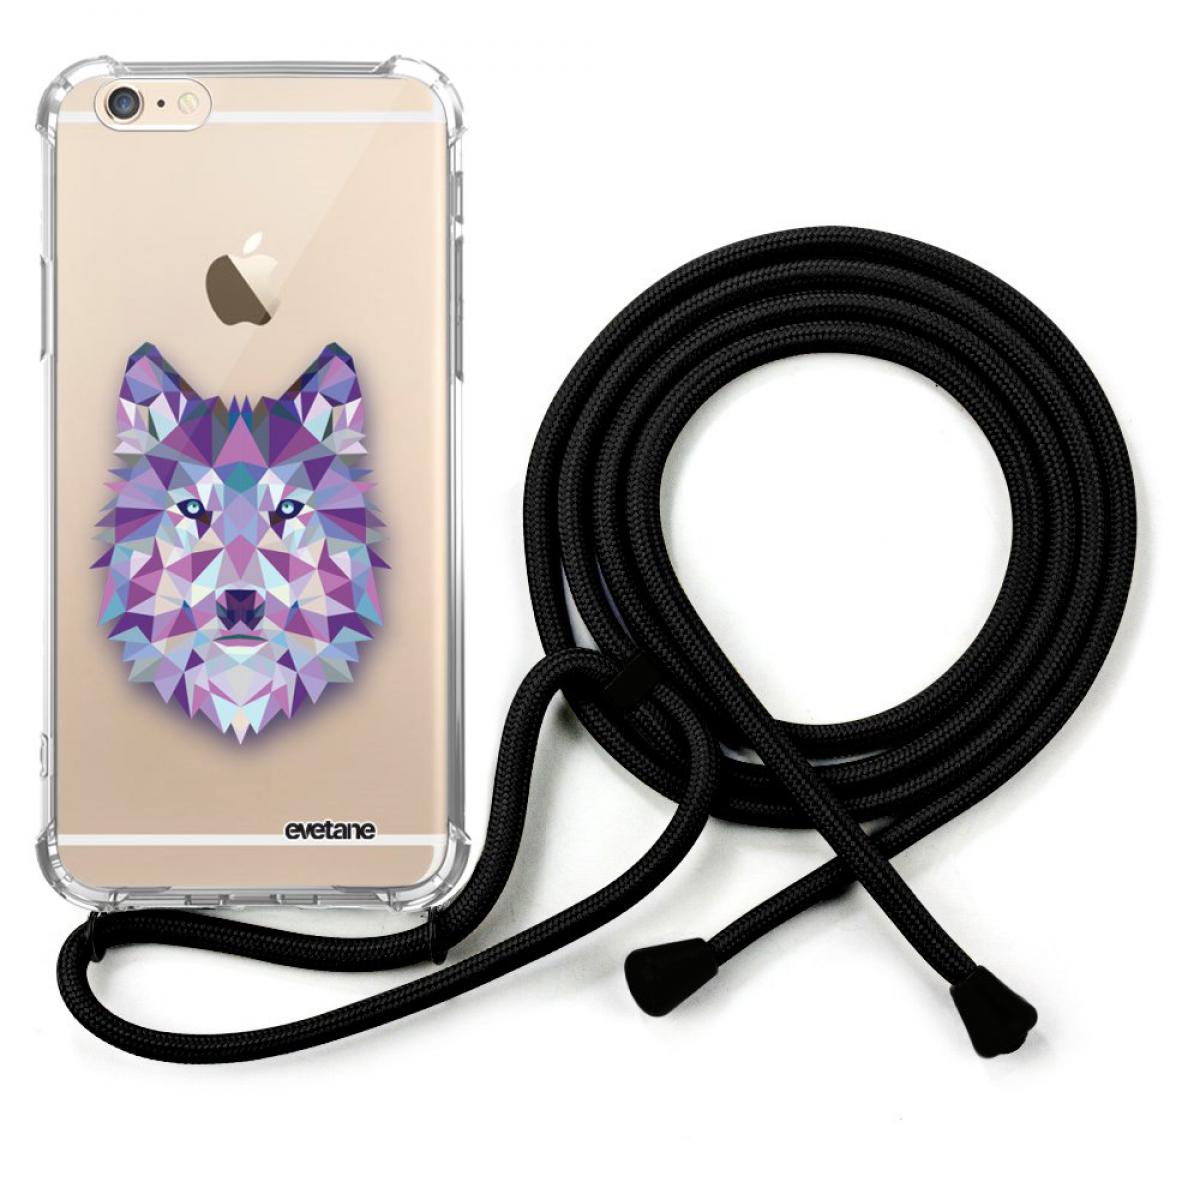 Evetane - Coque cordon compatible avec iPhone 6/6S cordon noir Dessin Loup geometrique Evetane. - Coque, étui smartphone